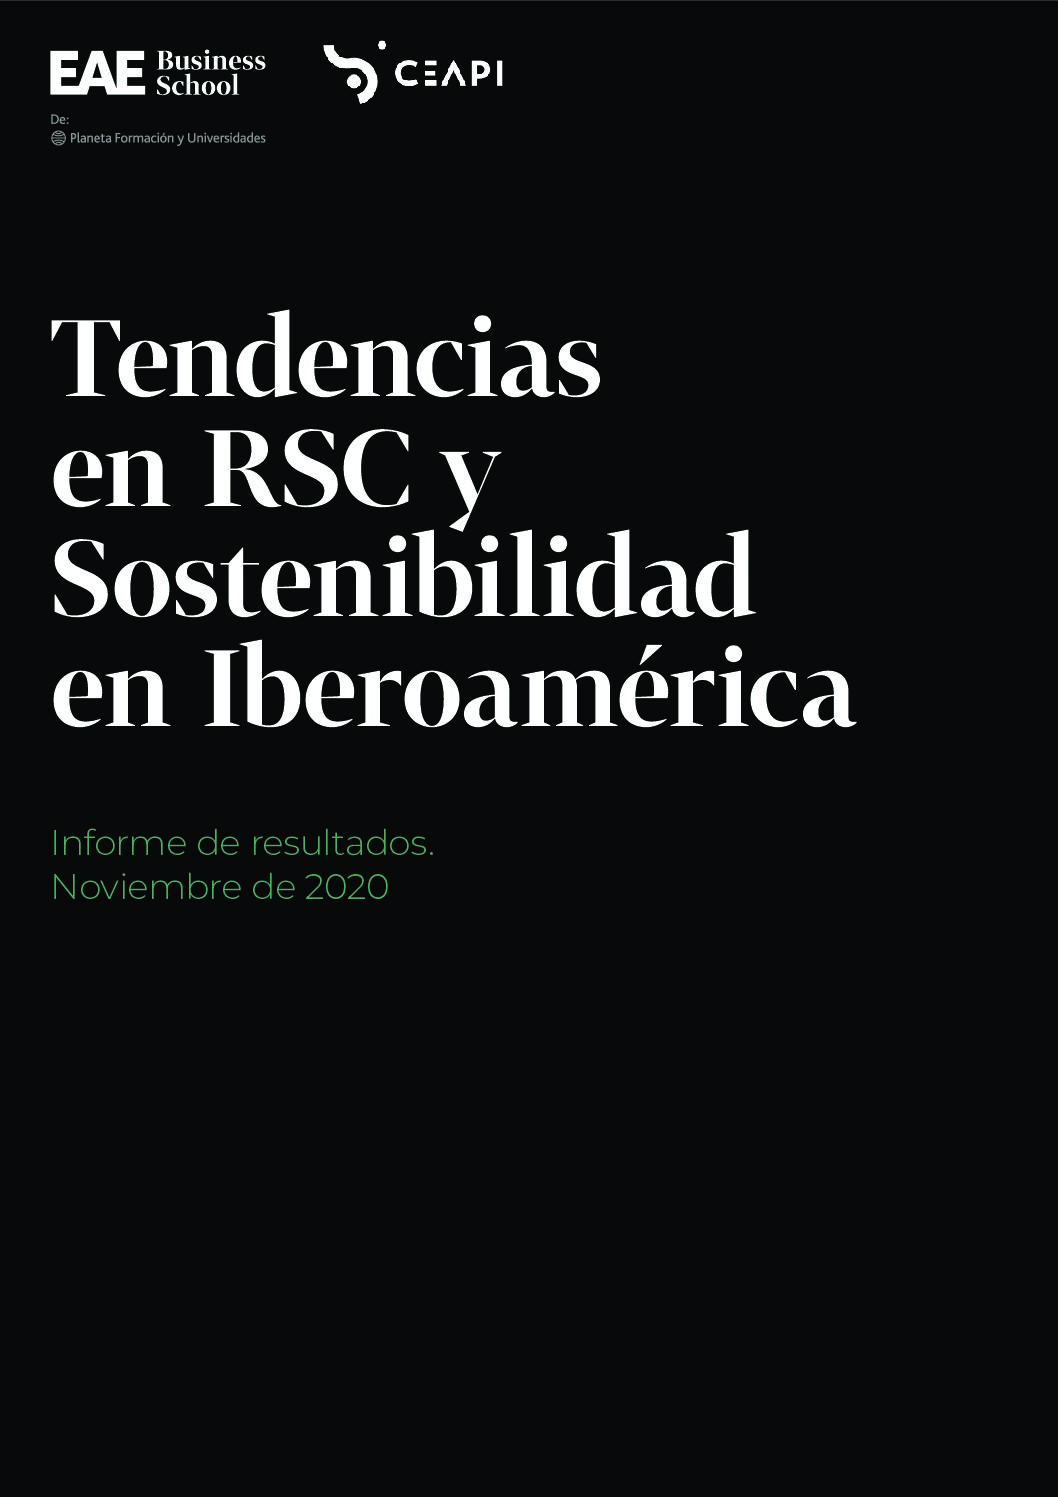 Tendencias RSC y Sostenibilidad en Iberoamérica